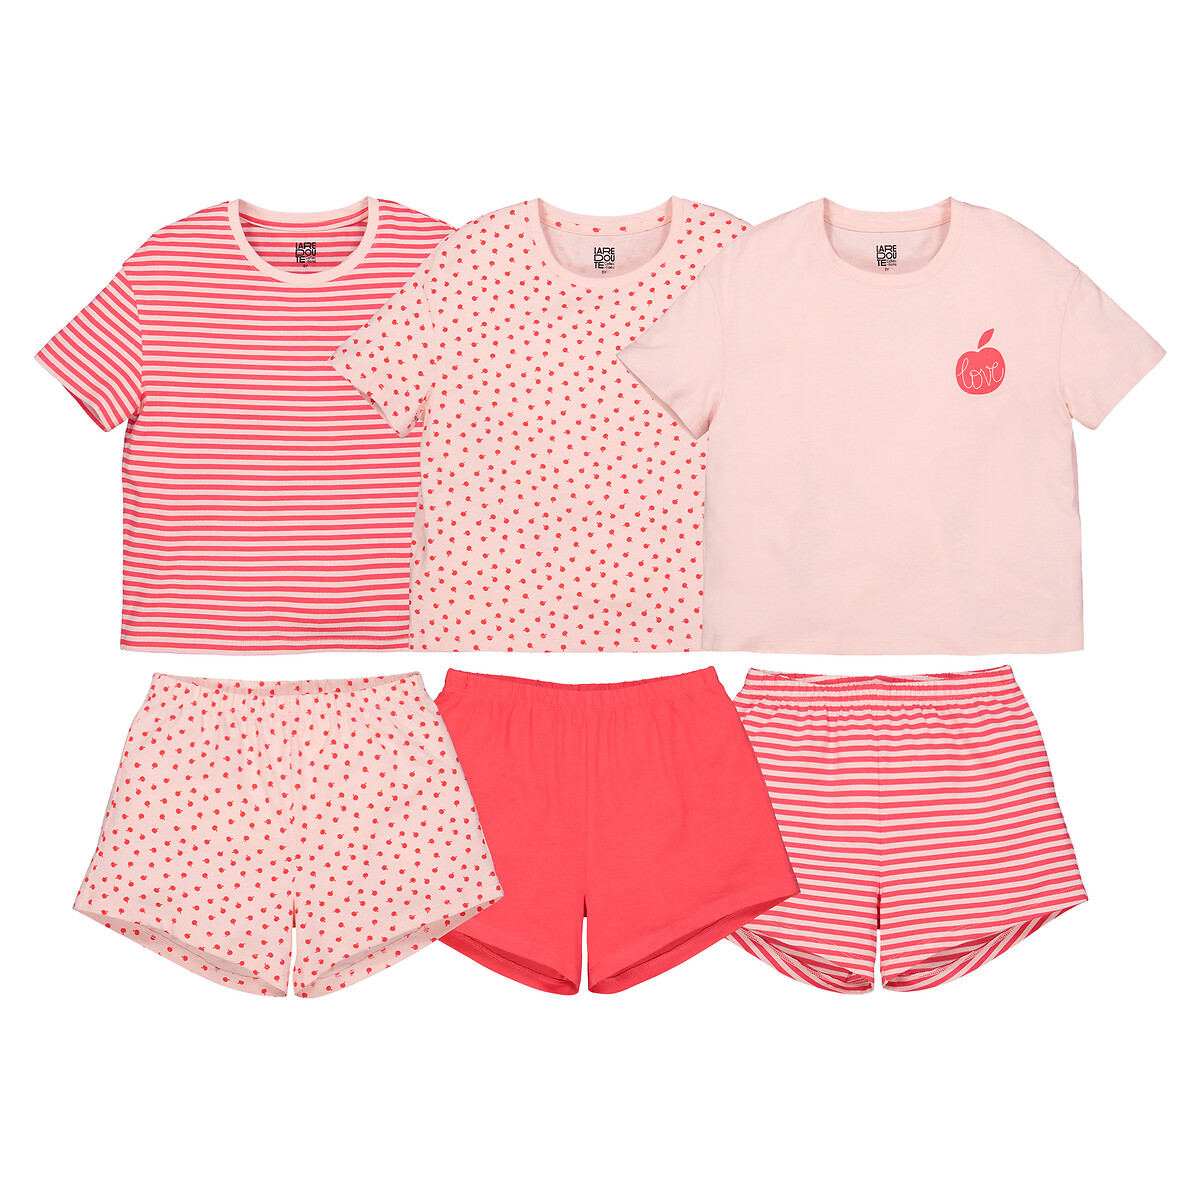 Комплект из трех пижам La Redoute 4 года - 102 см розовый комплект трех пижам из велюра la redoute 3 года 94 см бежевый